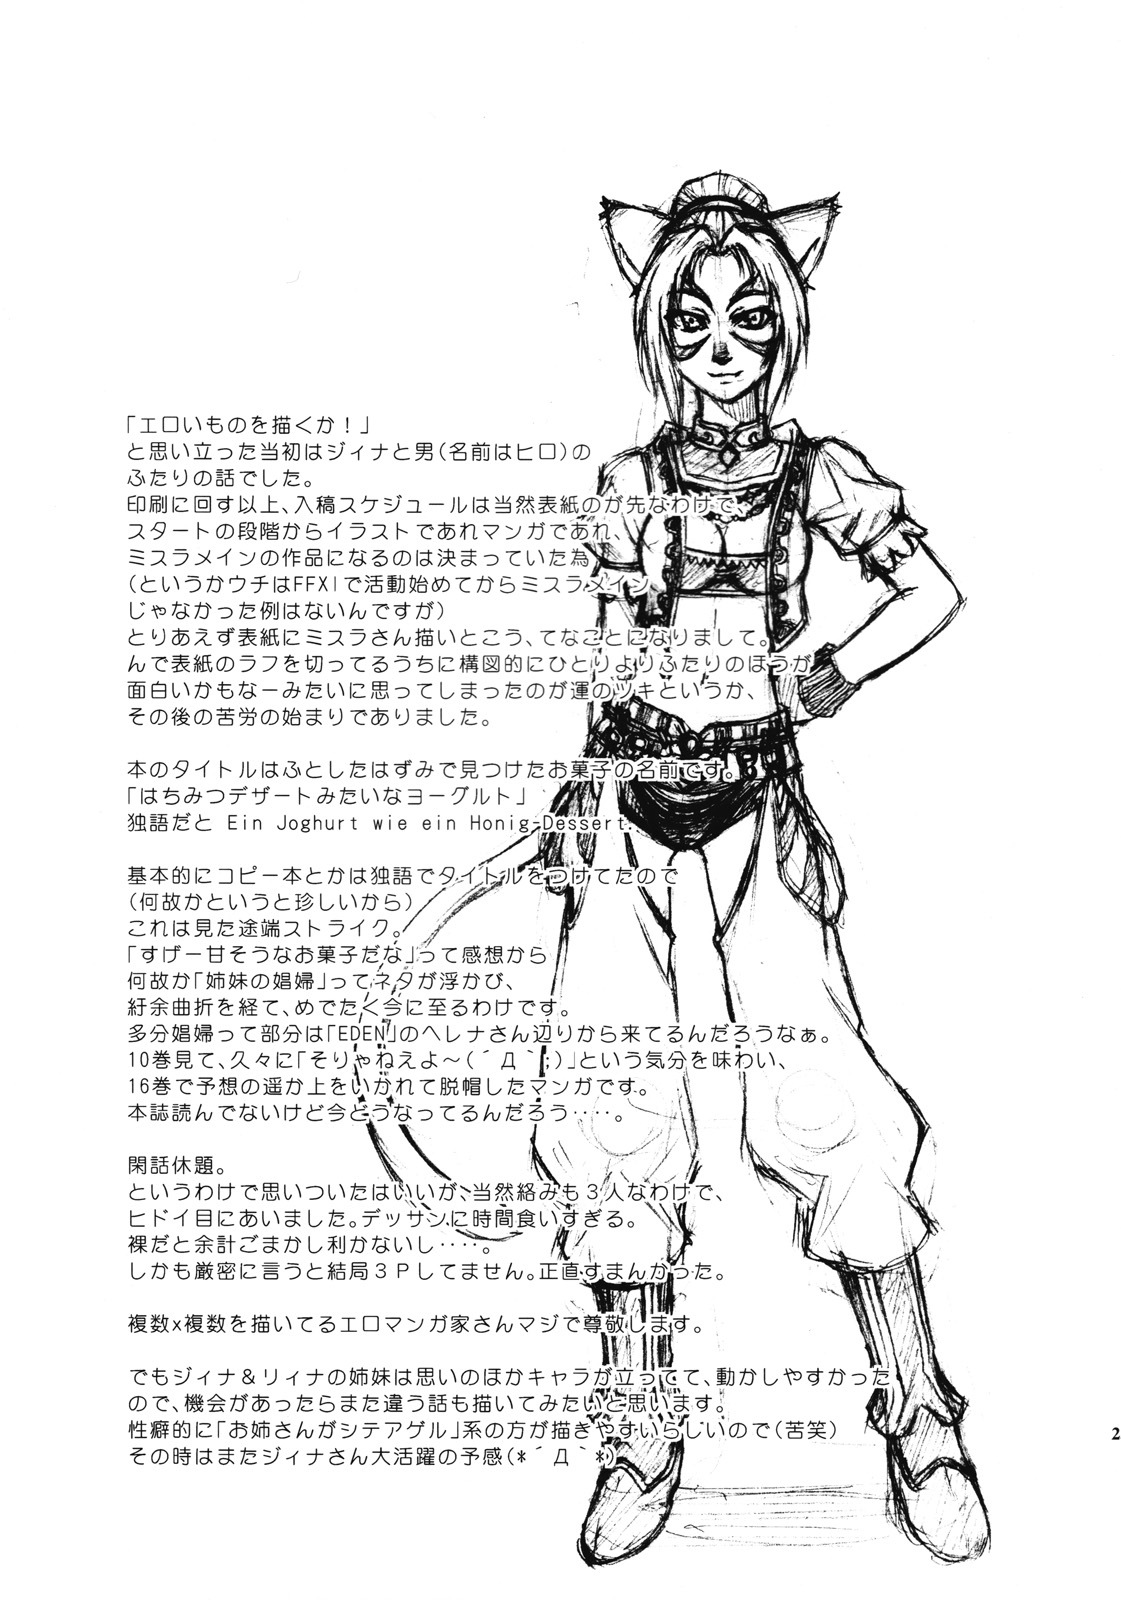 [ARCHENEMY (Kasumi Ryo)] Ein Joghurt wie ein Honig-Dessert. EXTENDED EDITION (Final Fantasy XI) page 24 full